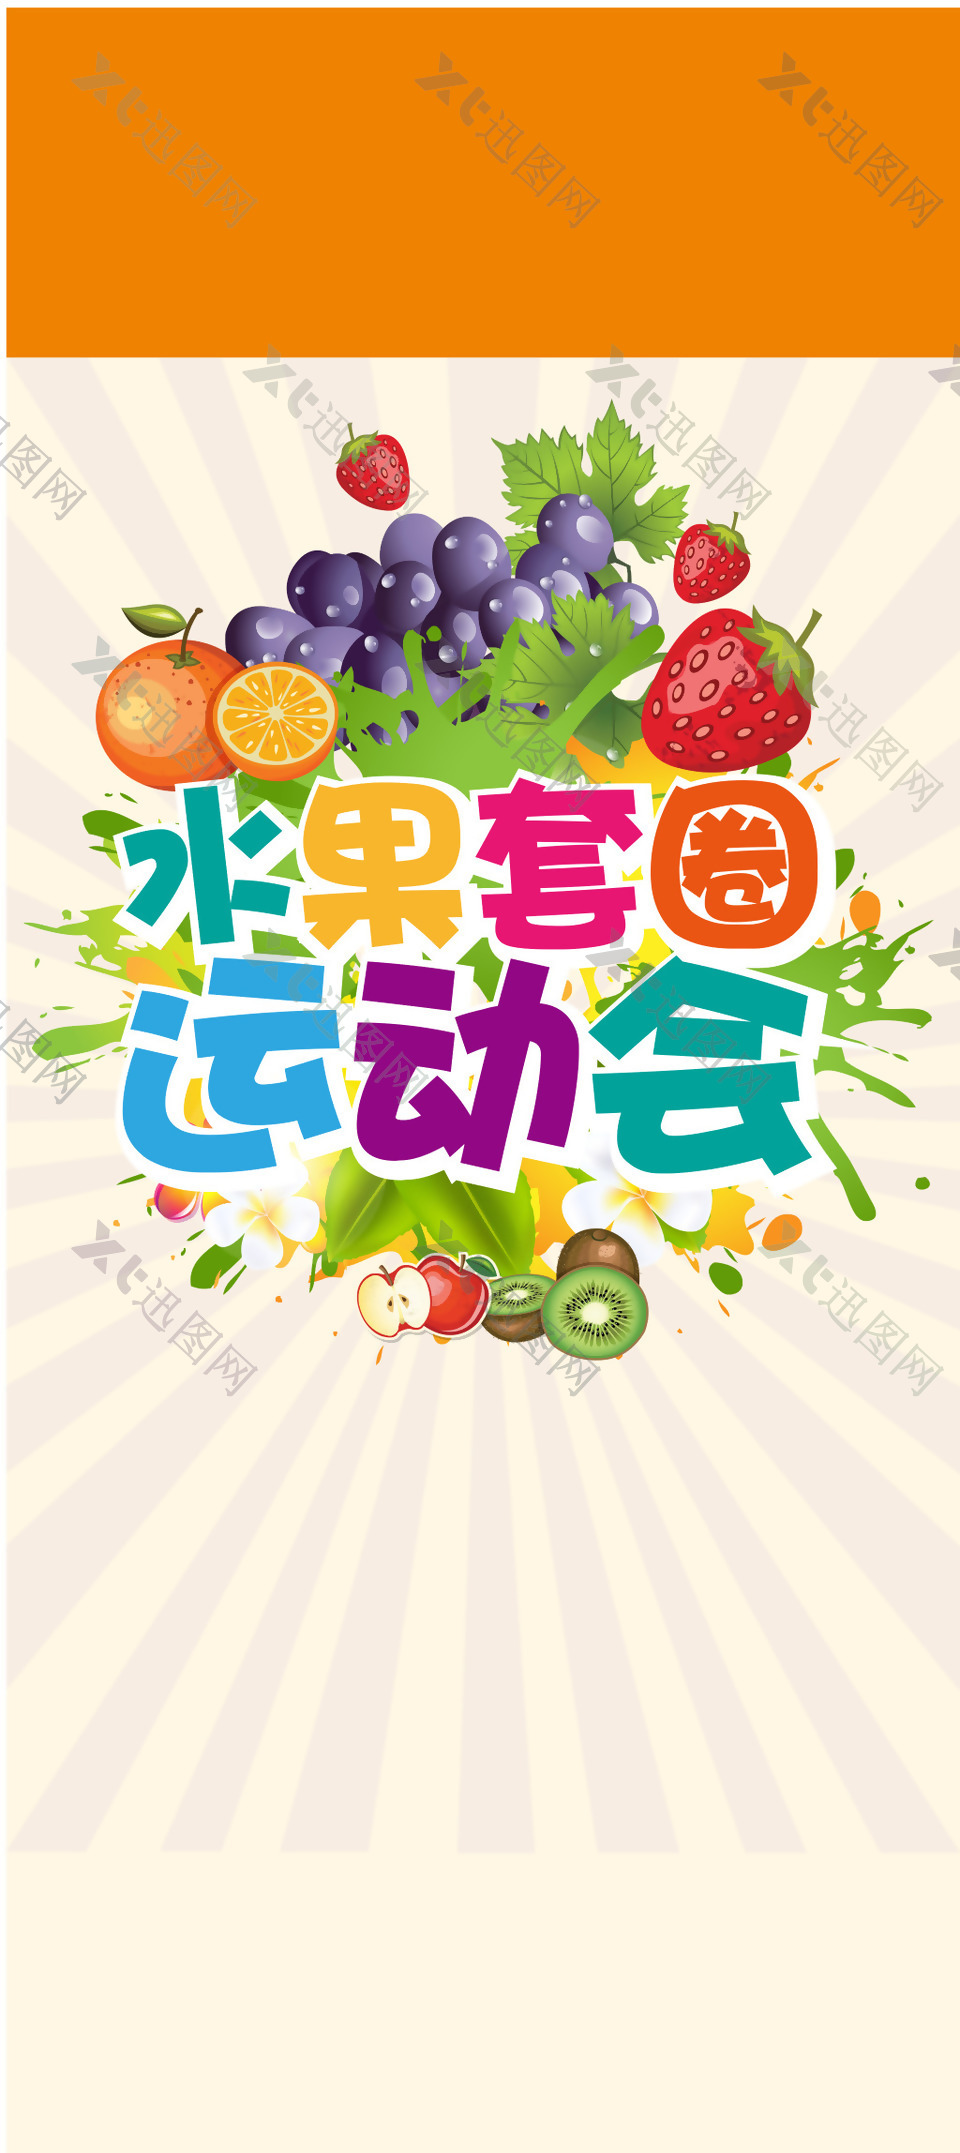 水果套圈运动会海报背景模板